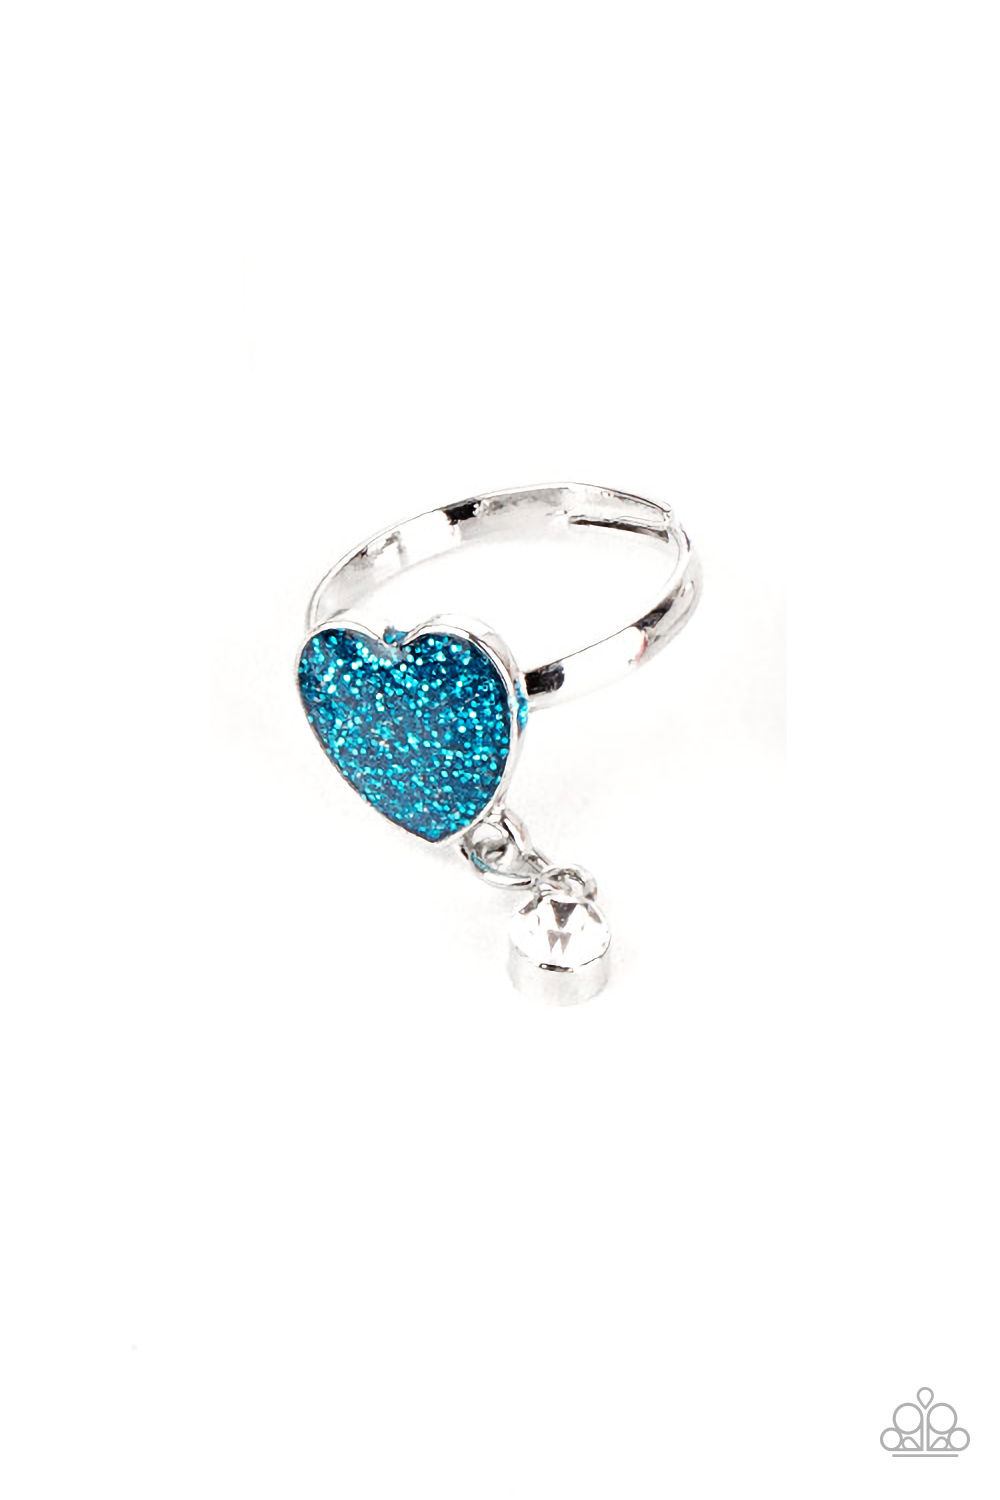 Ring - Starlet Shimmer Glitter Heart Rhinestone - Blue